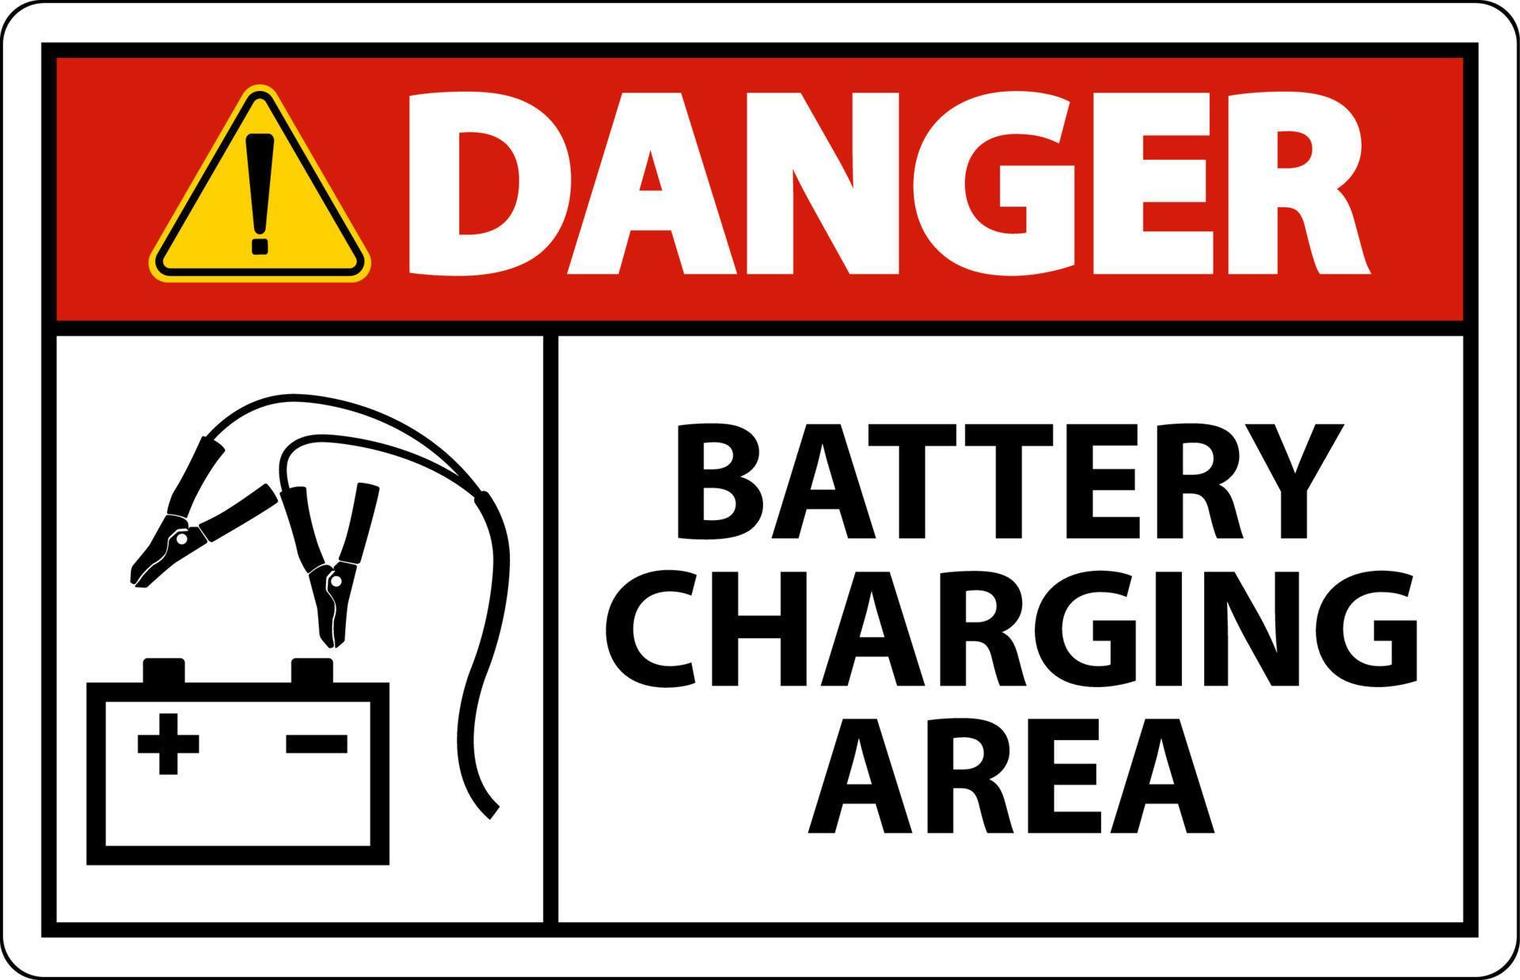 Gefahr Batterieladebereich Schild auf weißem Hintergrund vektor